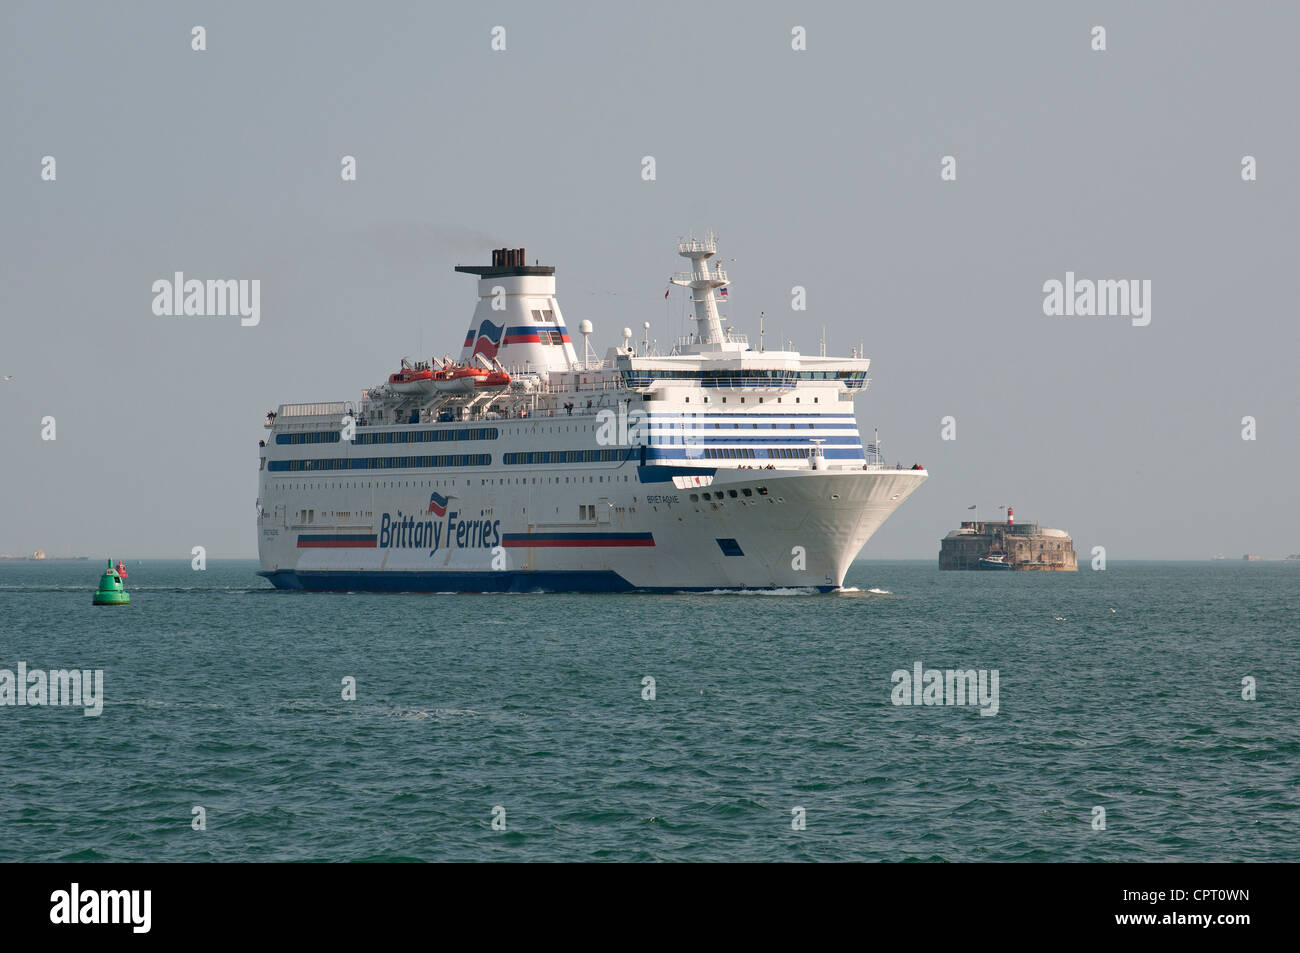 Brittan Ferries bateau Bretagne sur le Solent en rapprochement de Portsmouth Royaume-uni Spitbank fort passage Banque D'Images